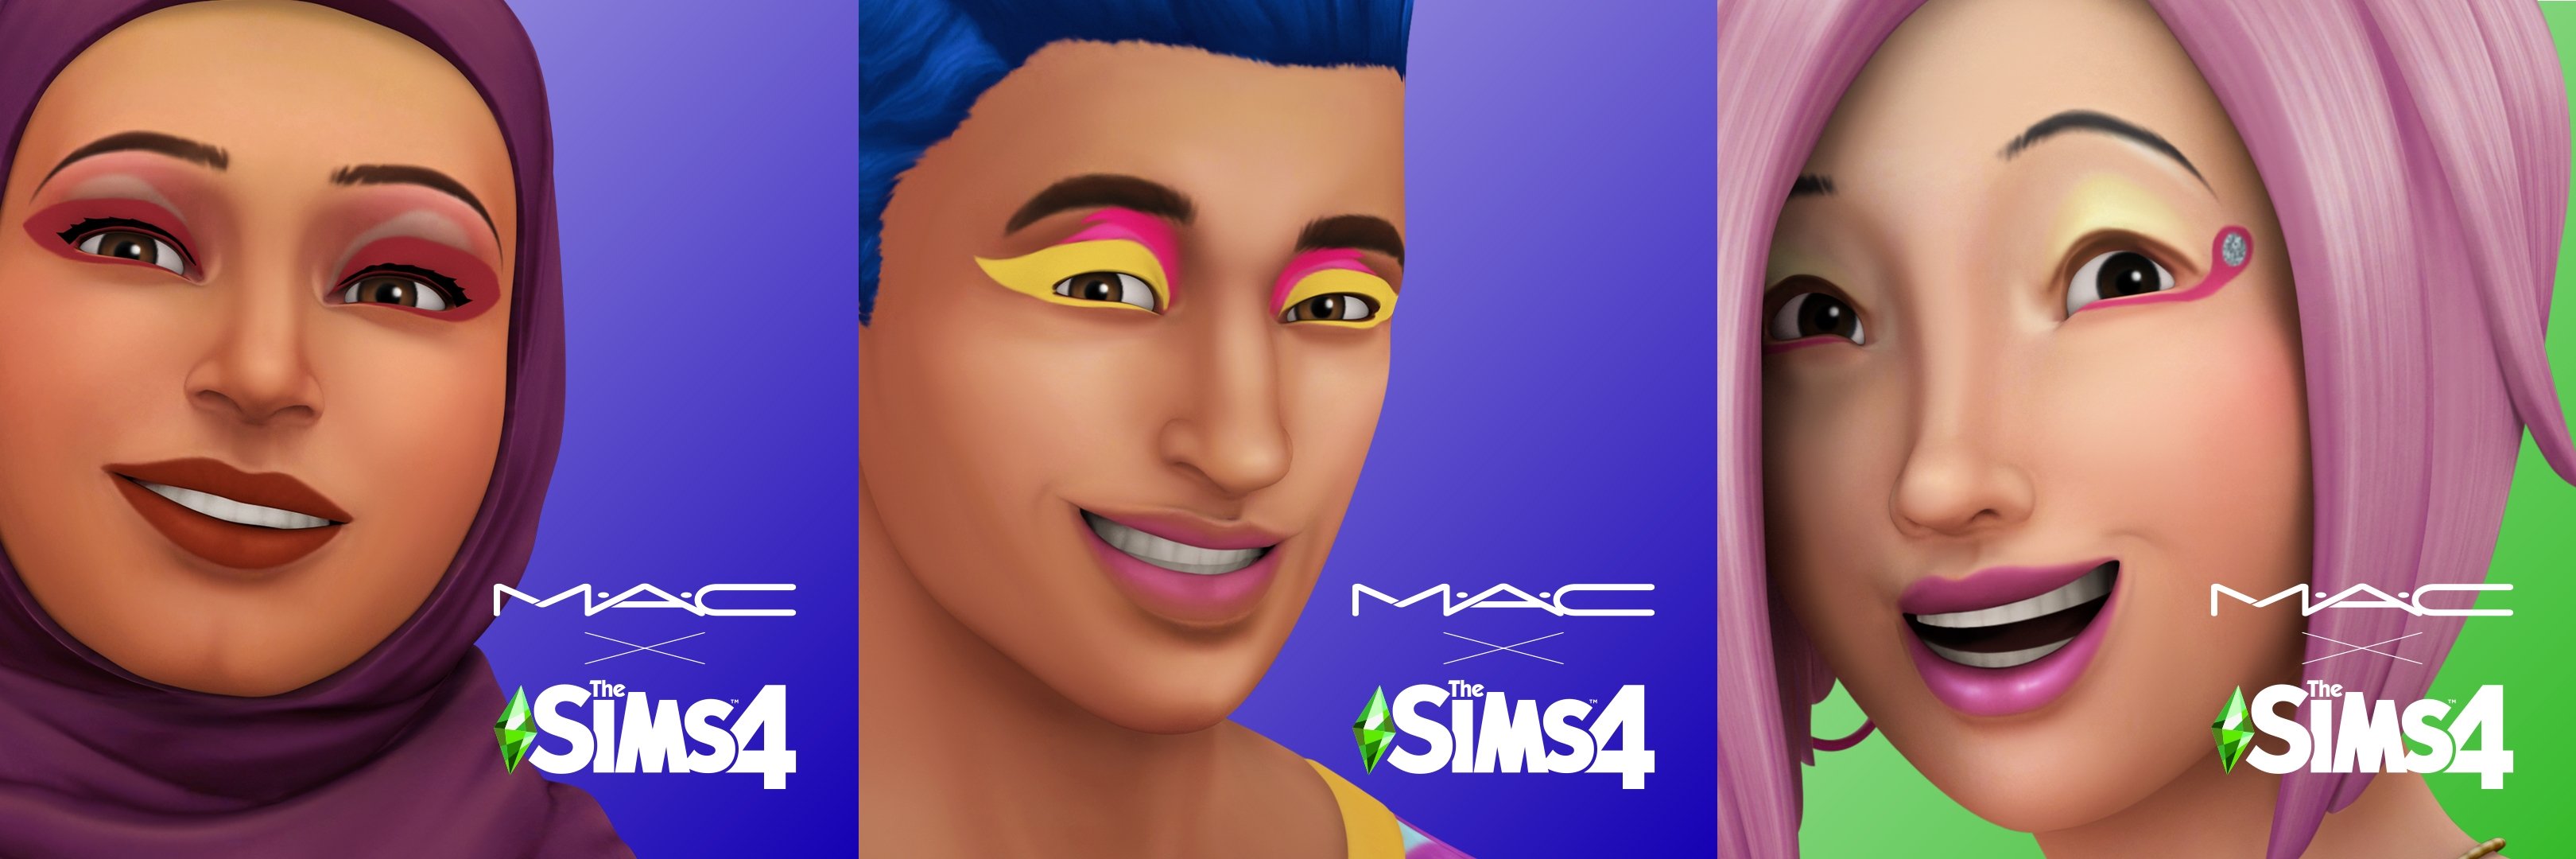 sims 4 make up